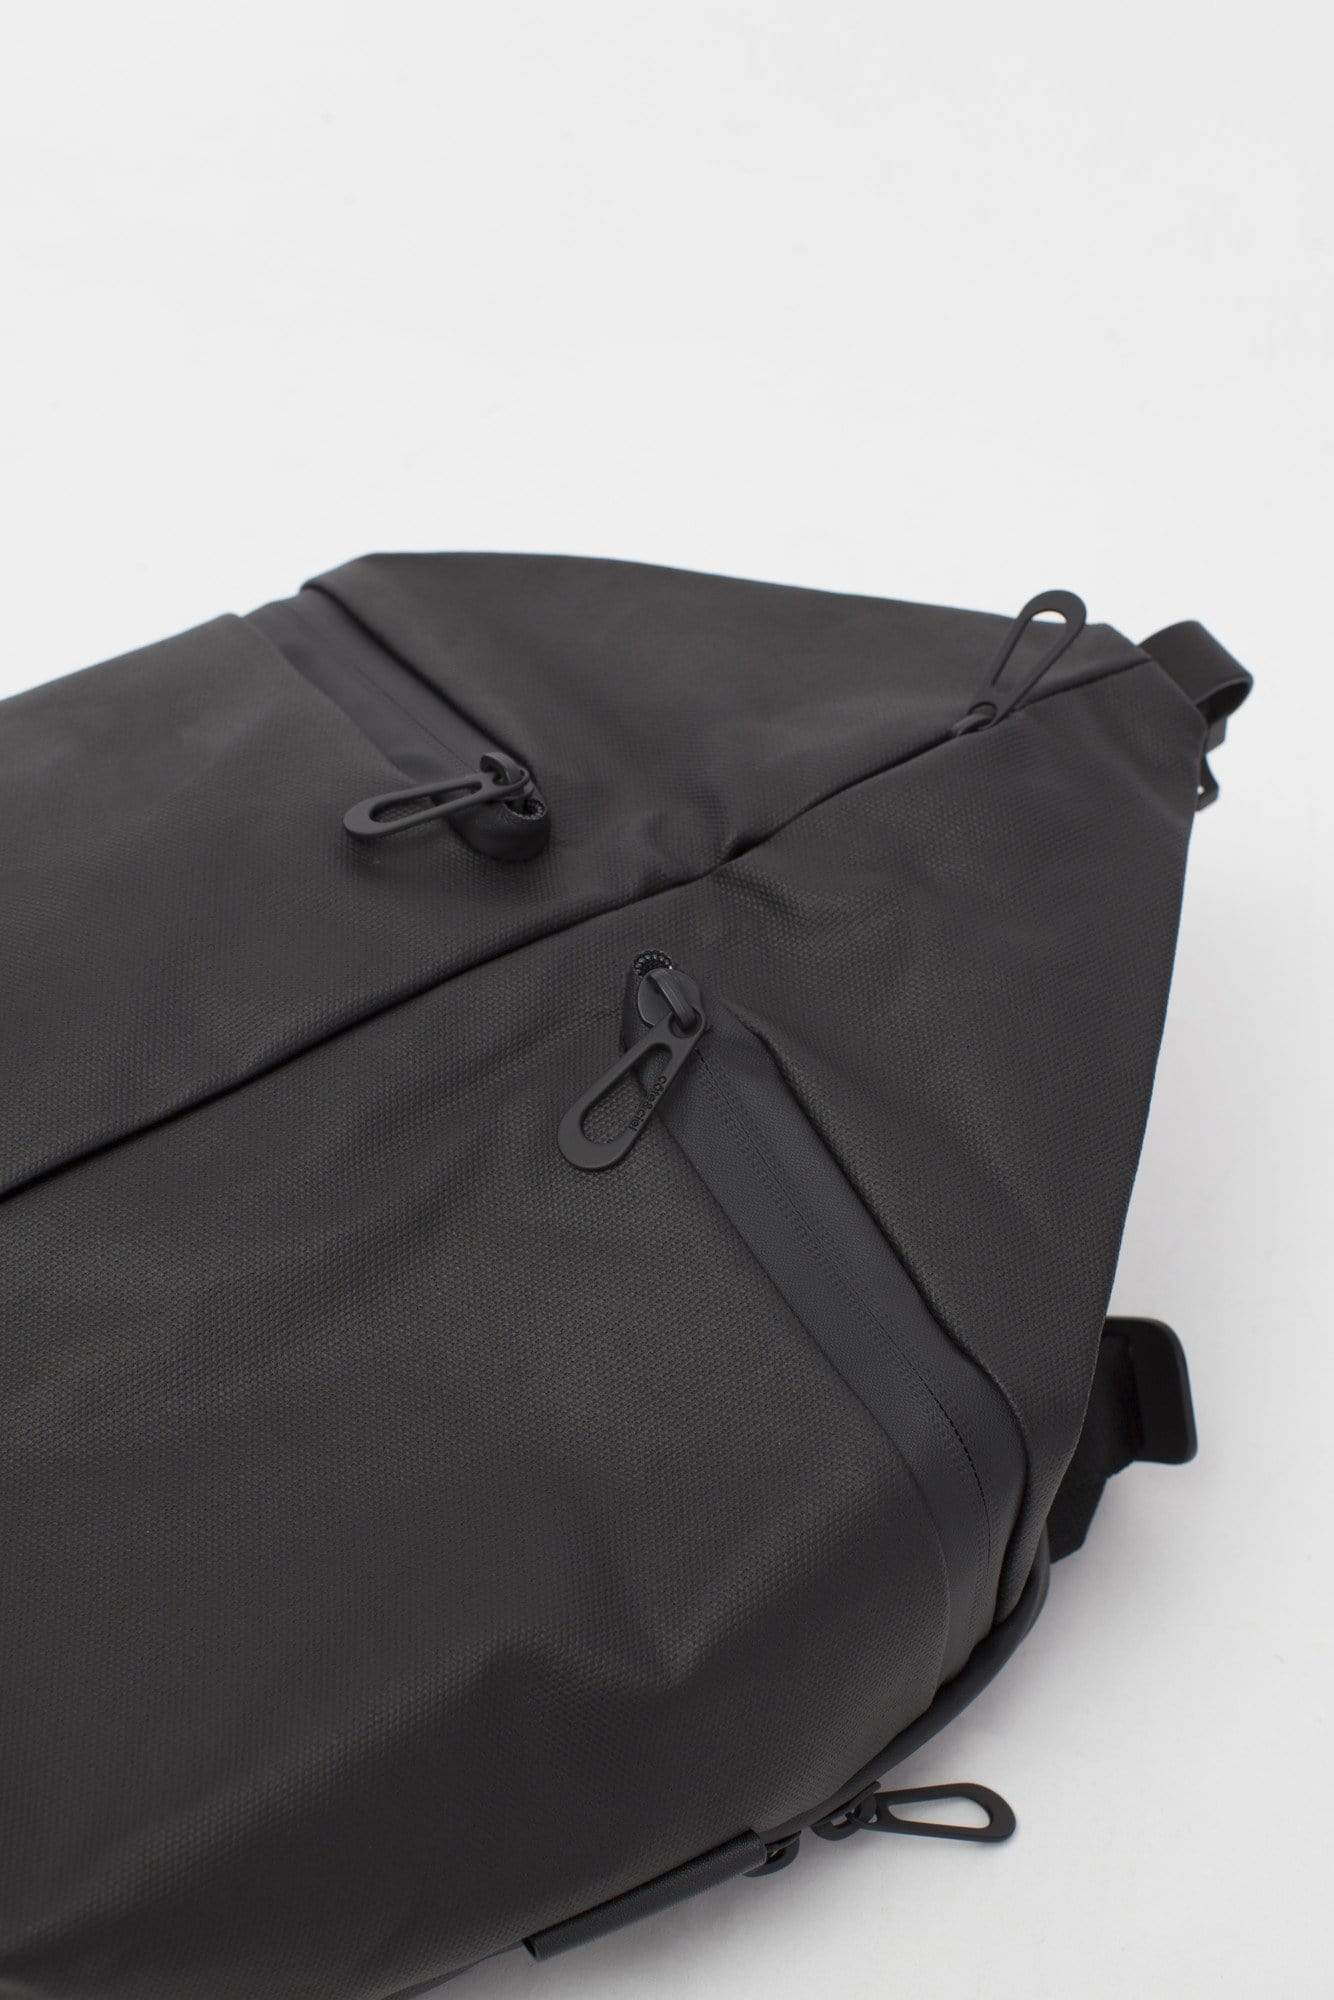 coteetciel Hybrid Bag Yakima Coated Canvas Black côte&ciel EU 28764